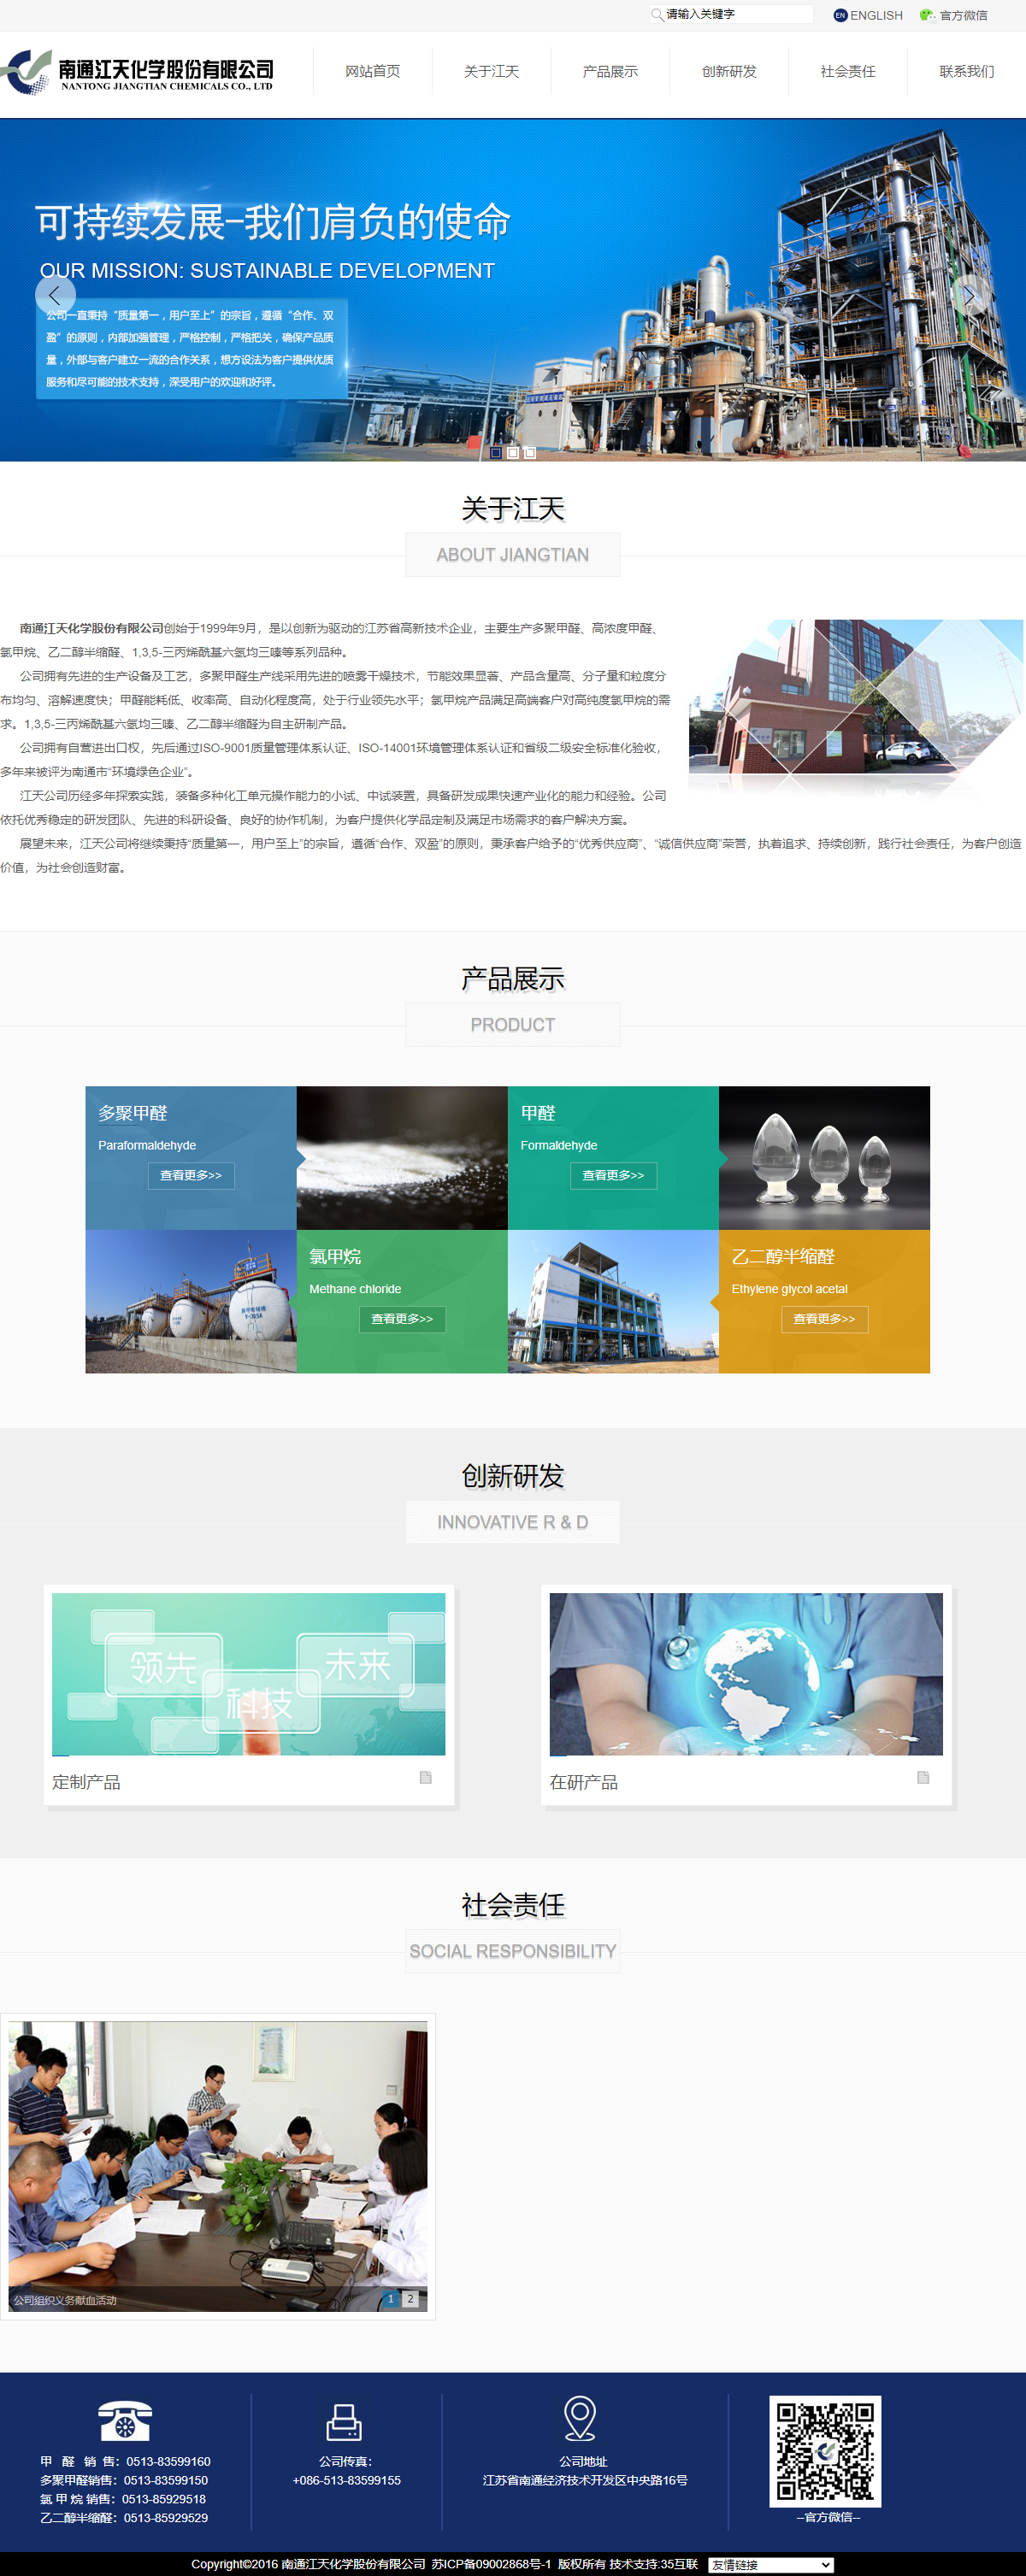 南通江天化学股份有限公司网站案例